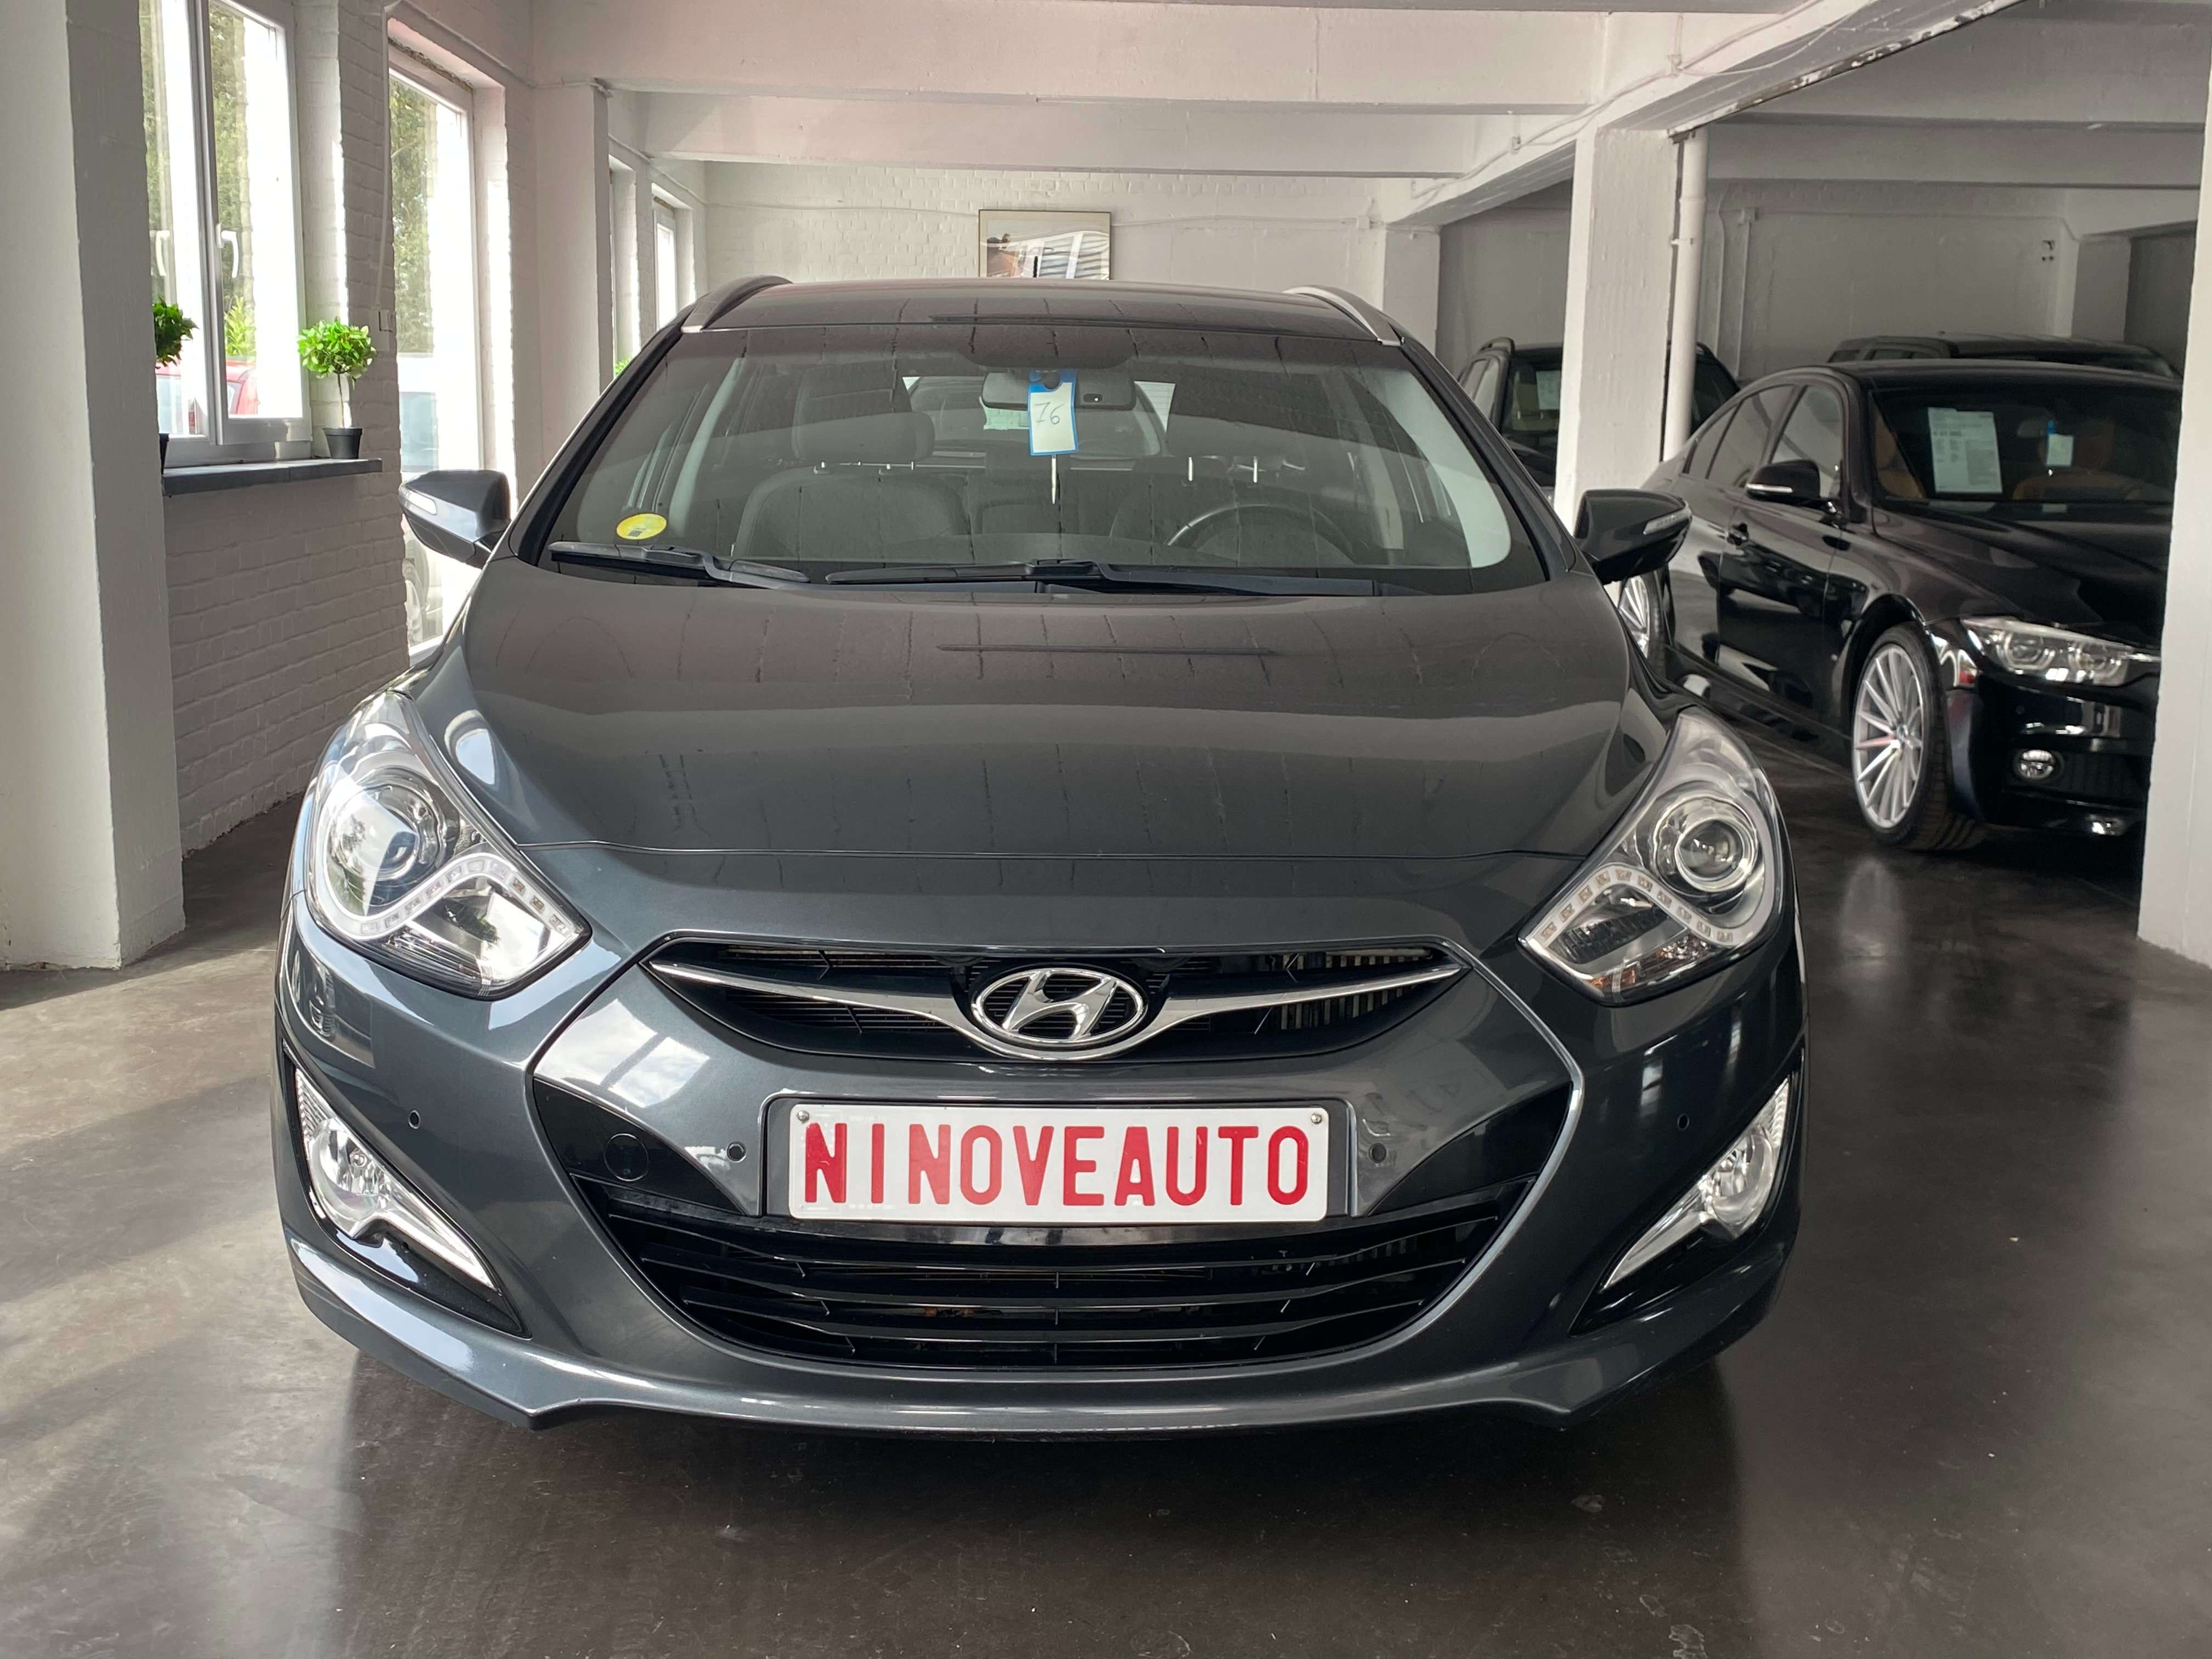 Ninove auto - Hyundai i40